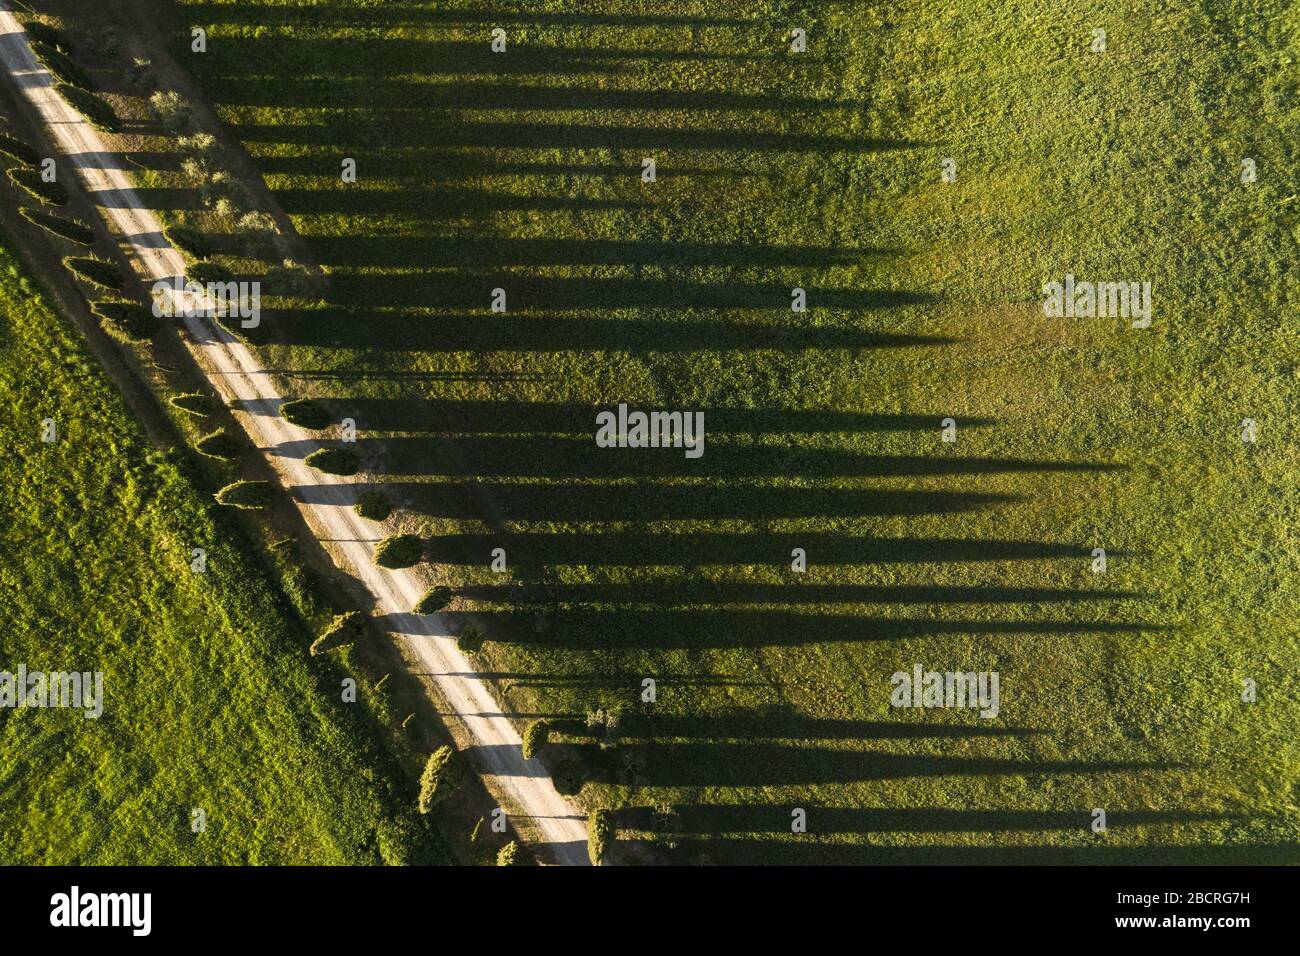 Vista aerea di cipressi verdi. Siena, Italia. Foto Stock